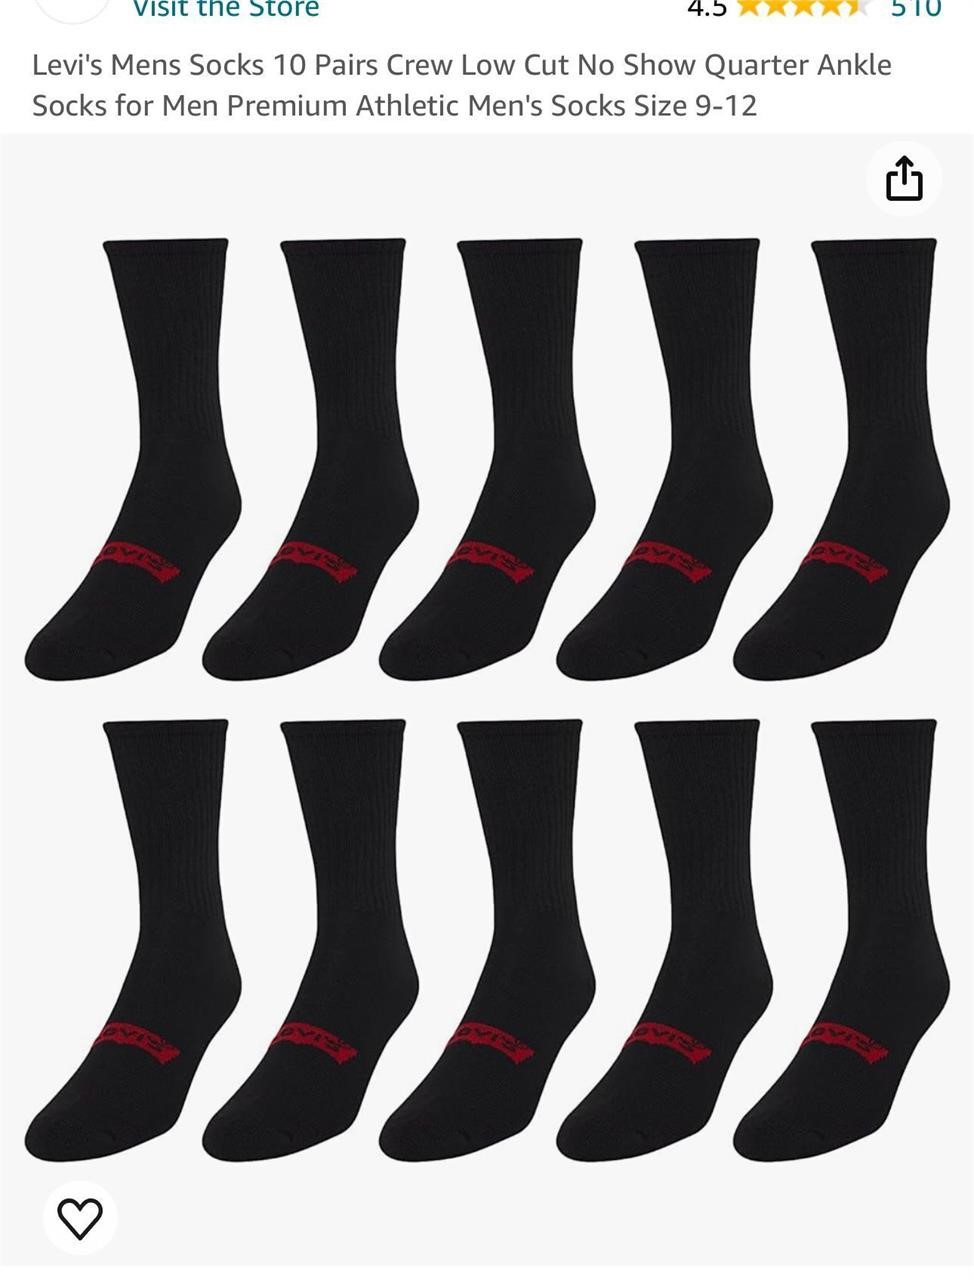 Levi's Mens Socks 10 Pairs